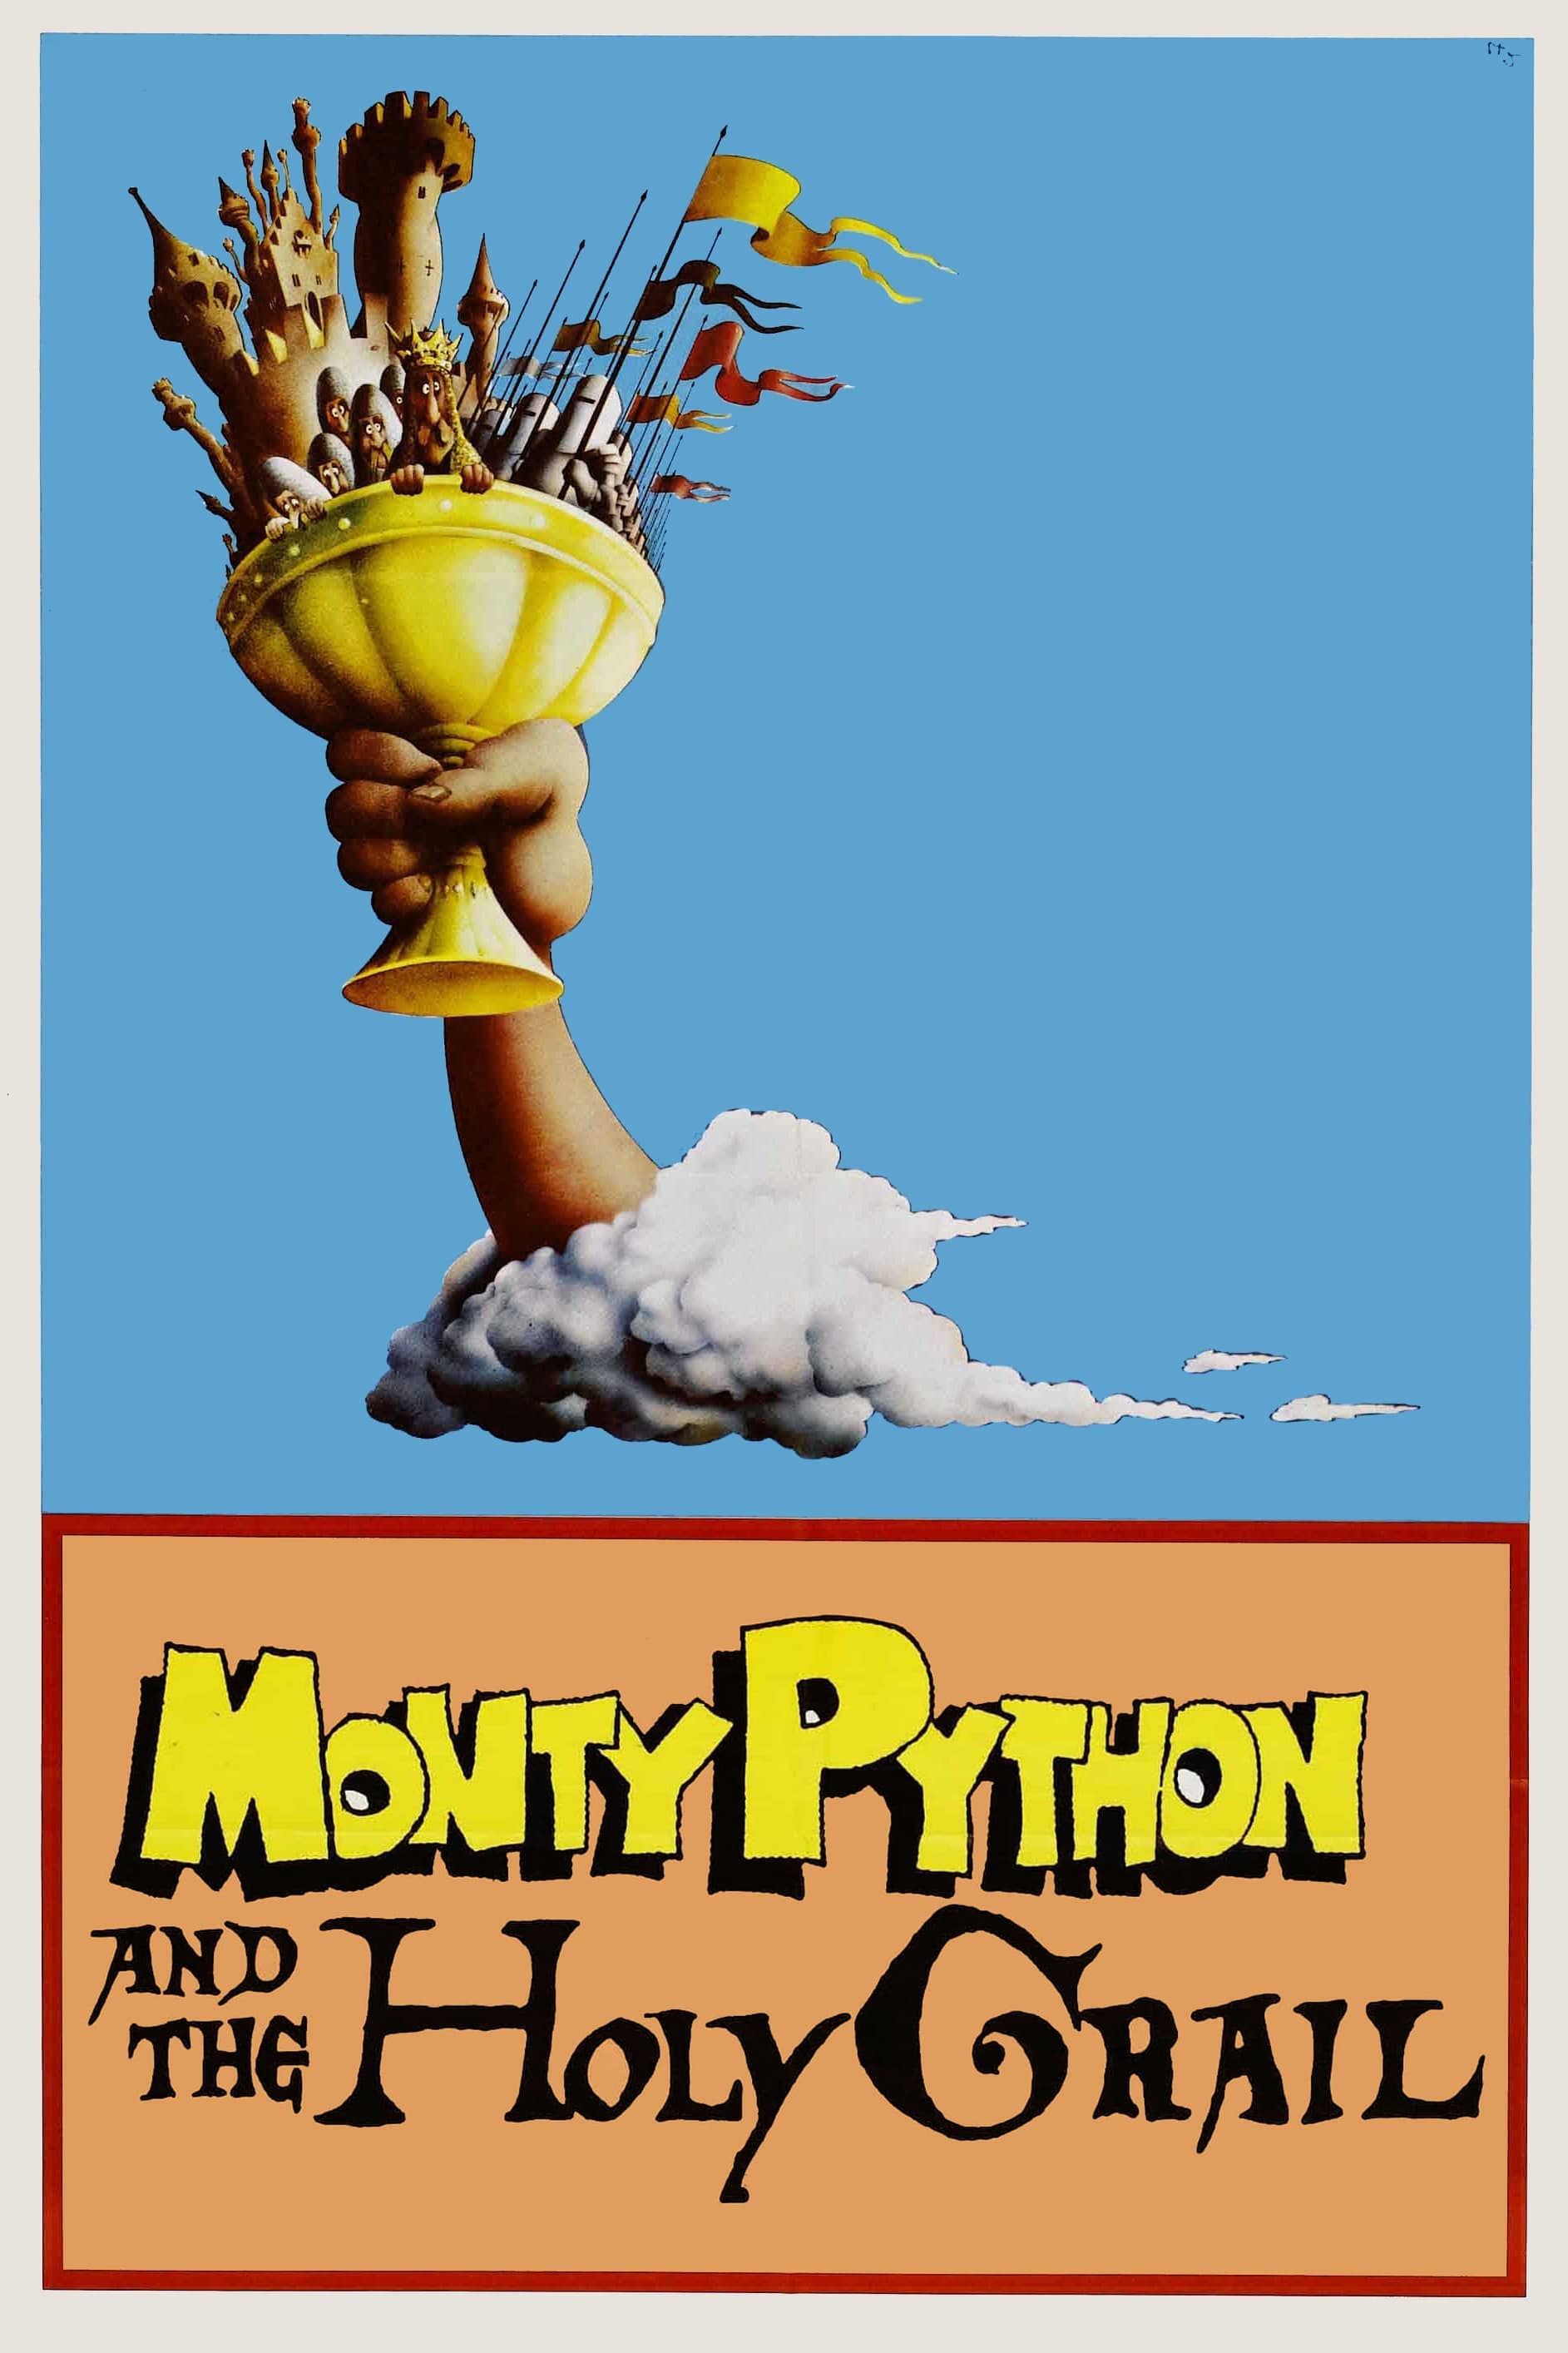 Monty Python: Die Ritter der Kokosnuss